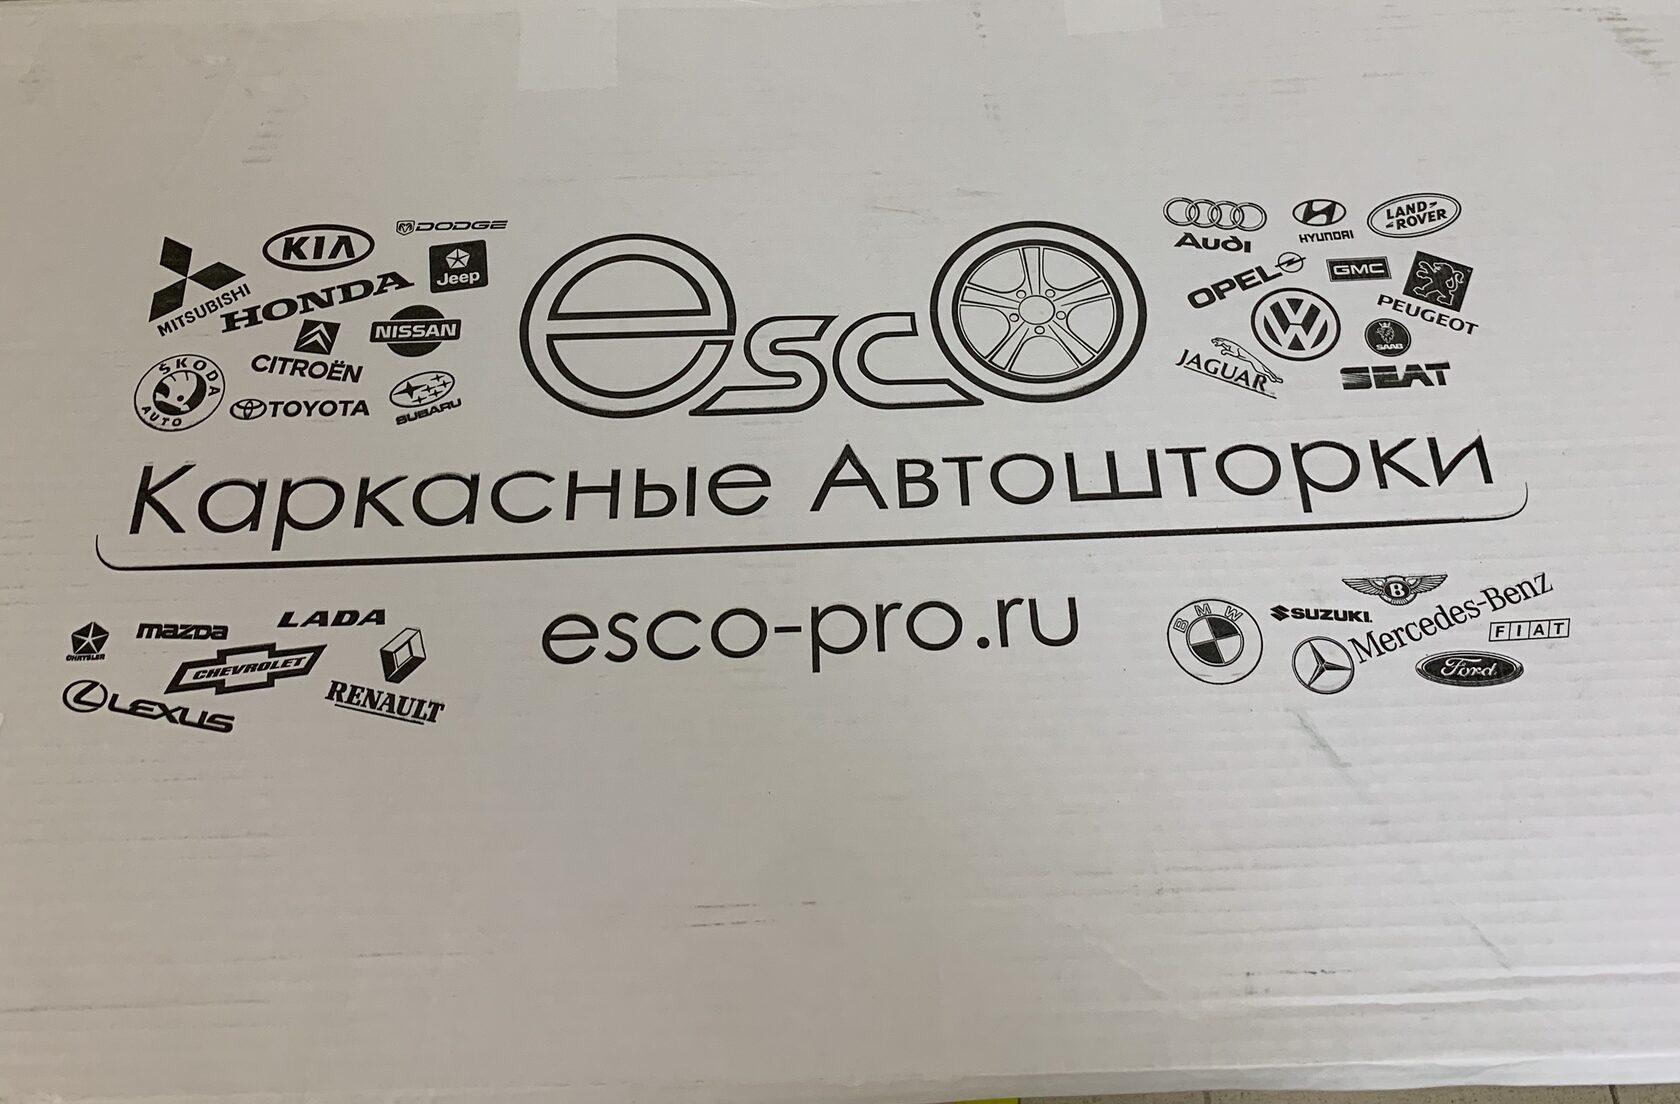 Упаковка Esco